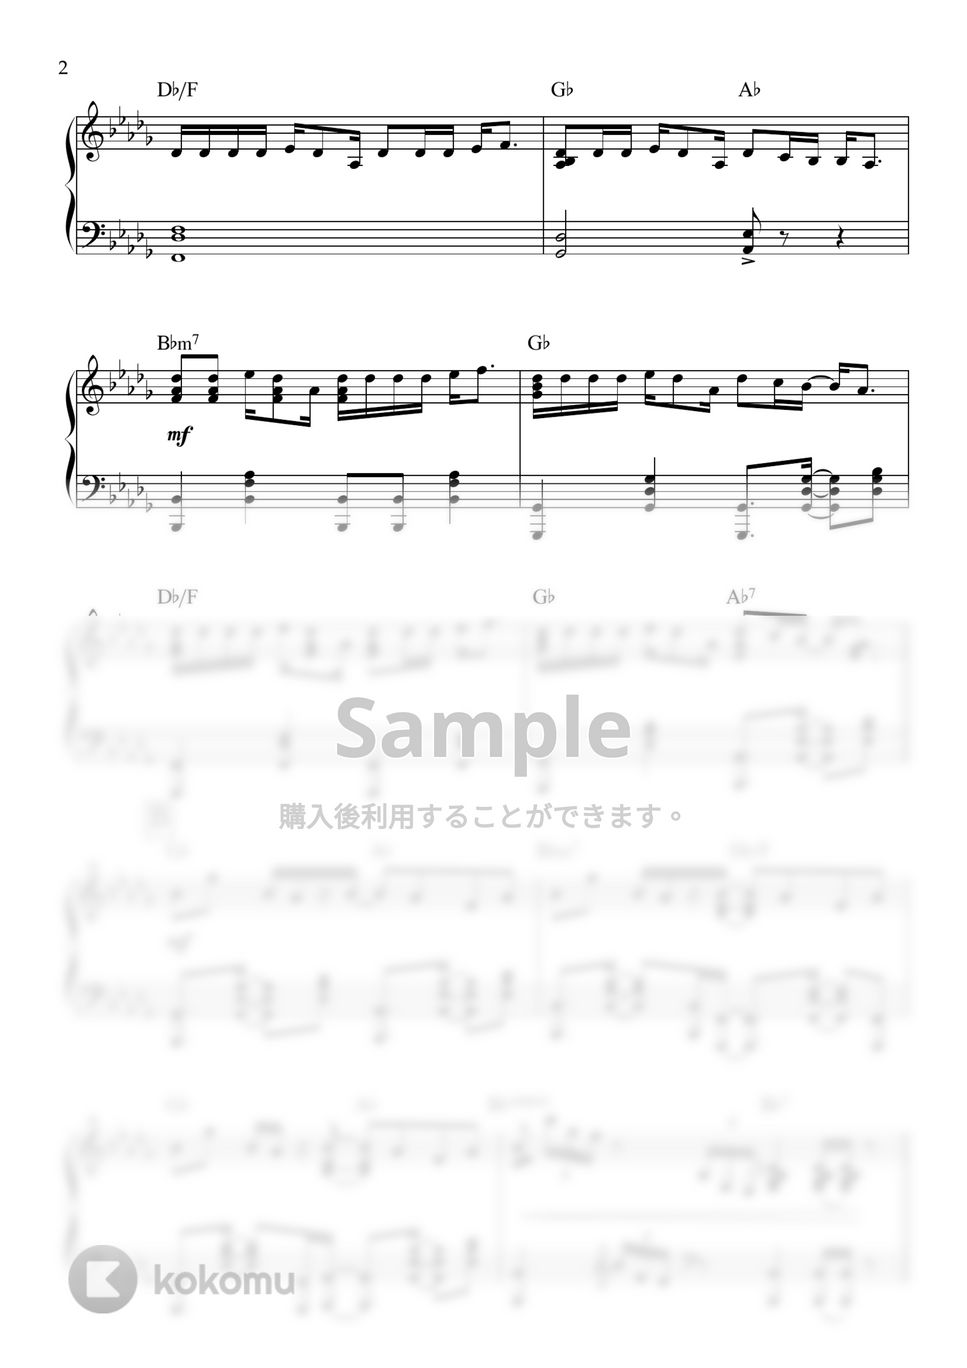 亜沙 - 吉原ラメント (ピアノ,亜沙,重音テト) by ヒット